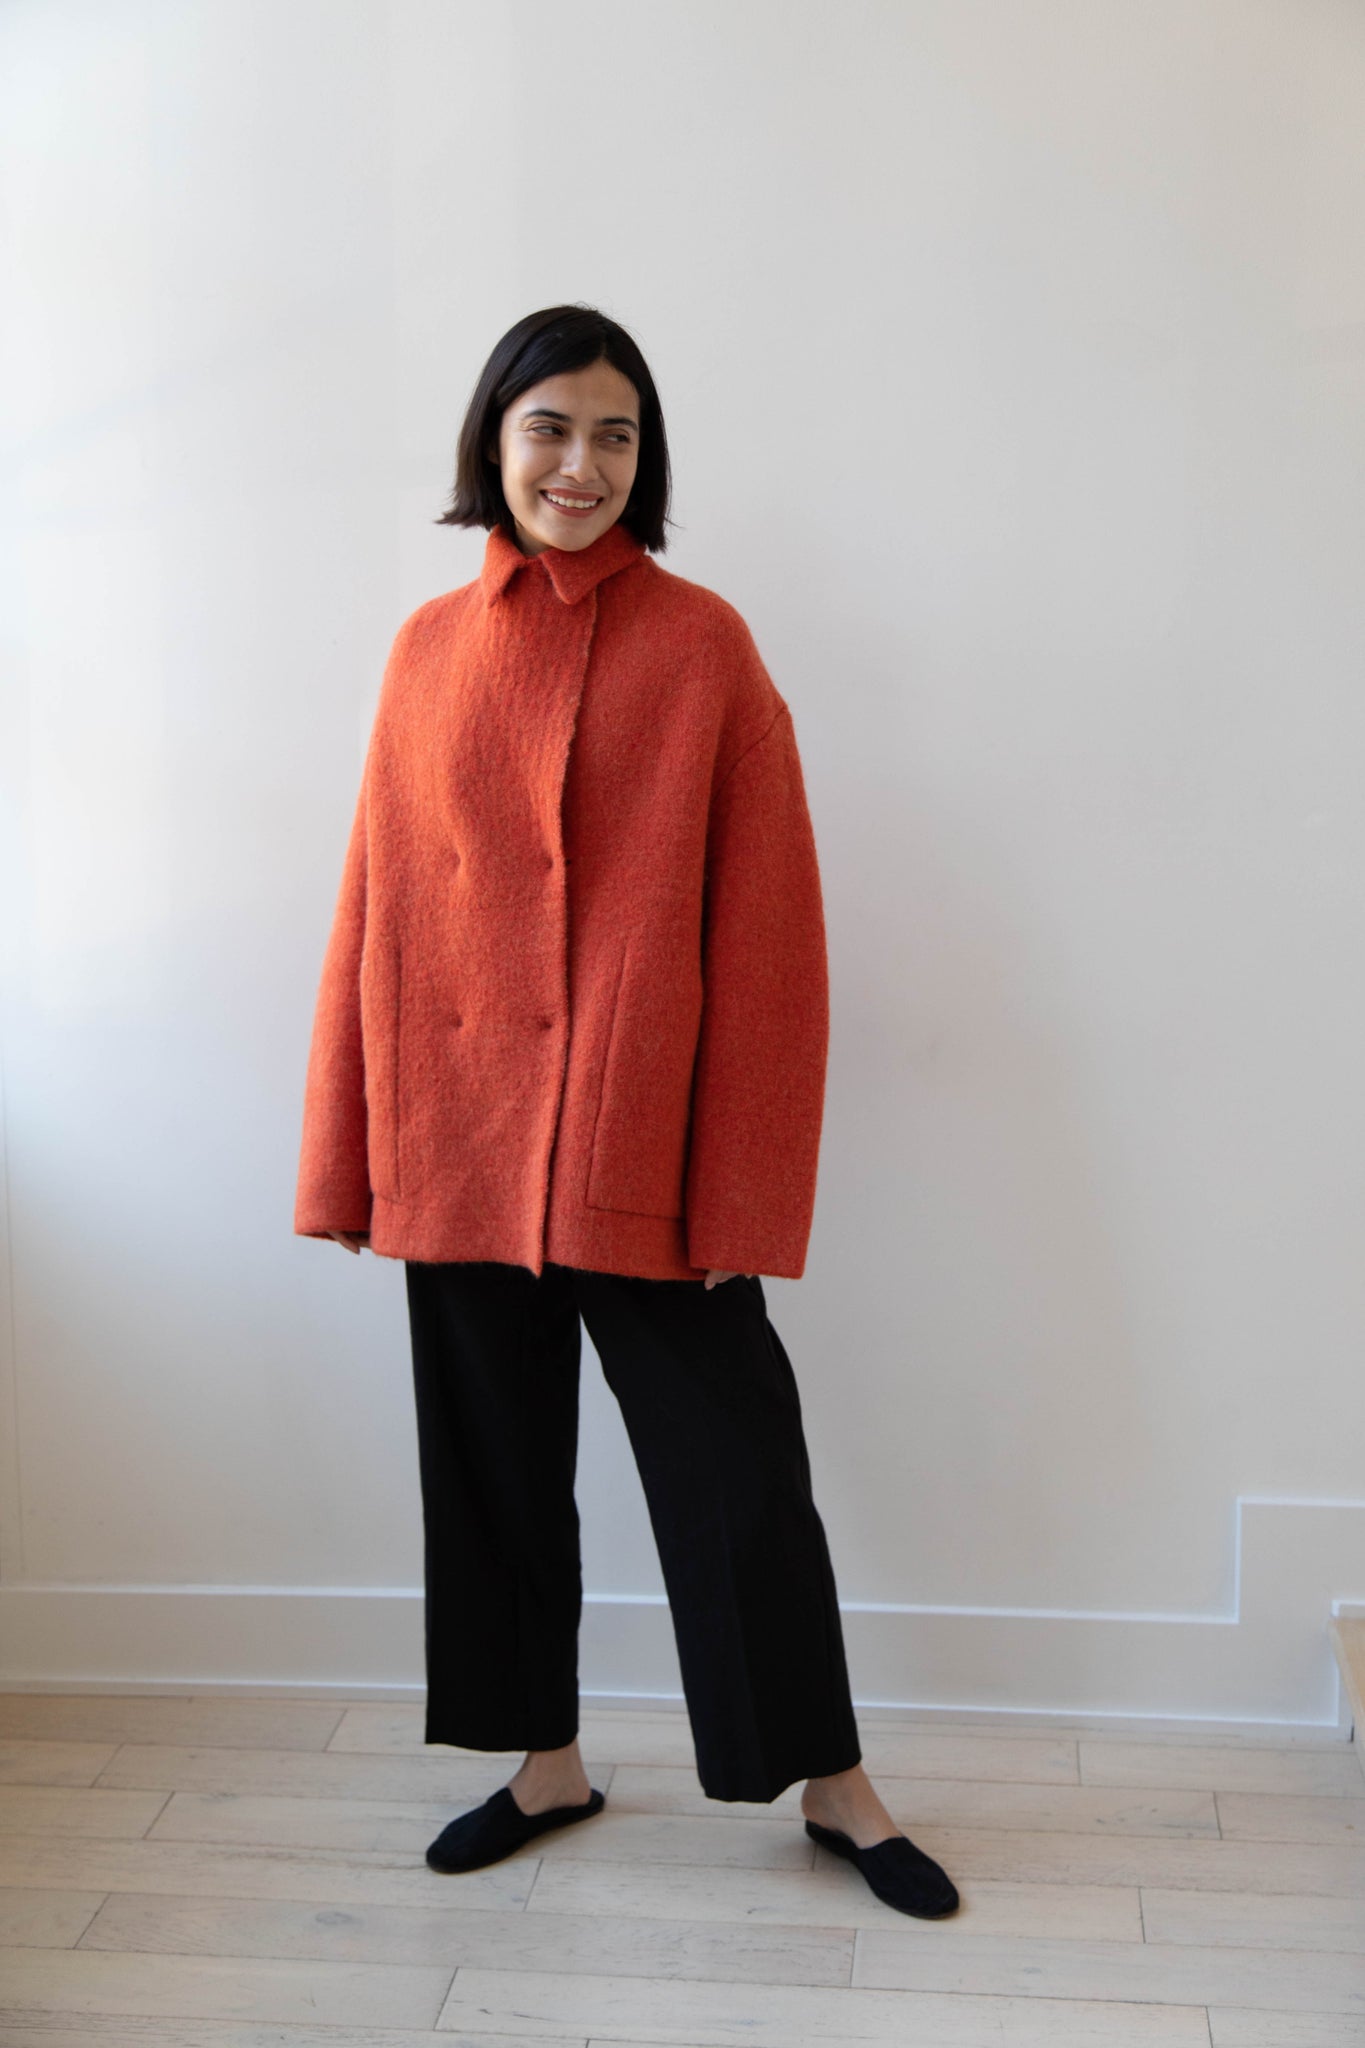 Boboutic | Short Bob Overcoat in Red Orange